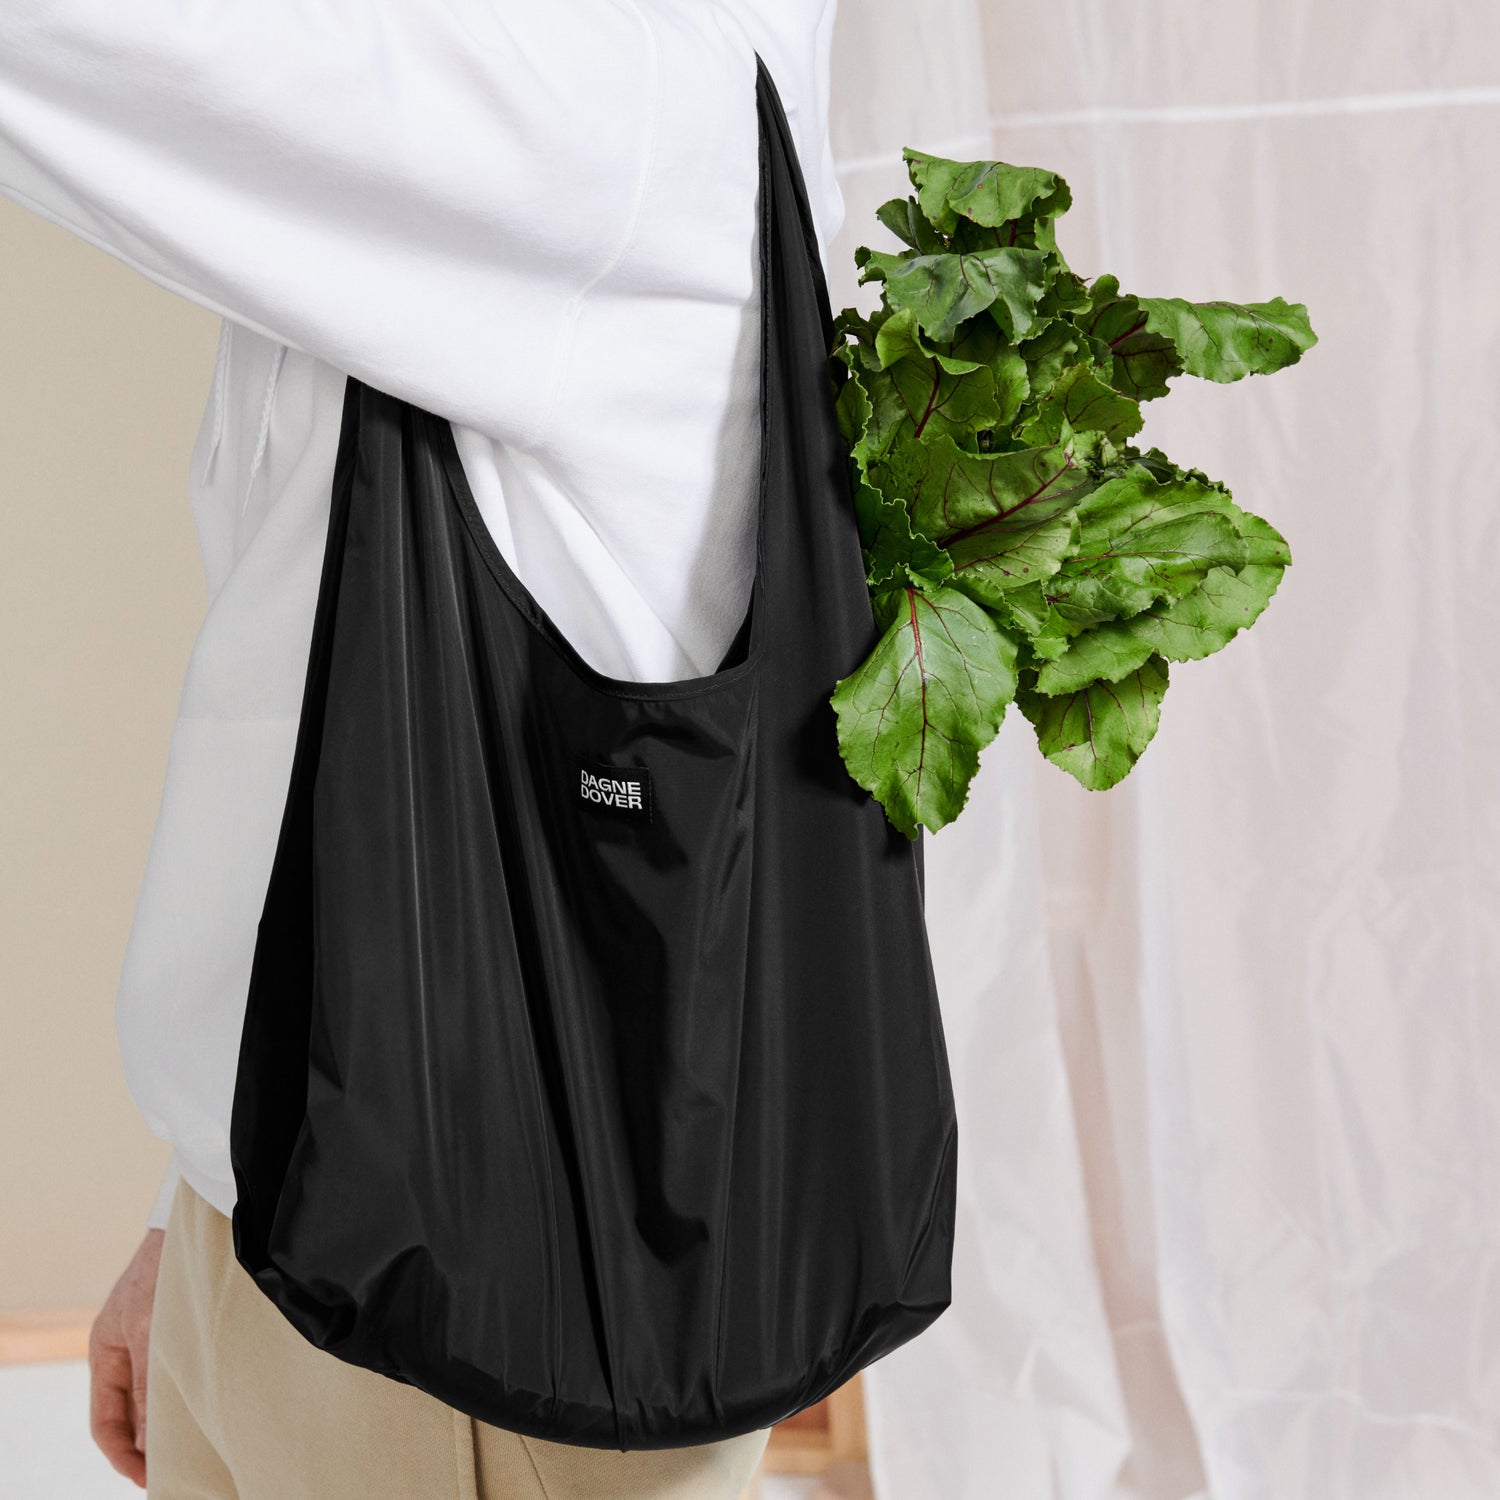 NEW Dagne Dover Landon Carryall Bag - Medium - Dark Moss please